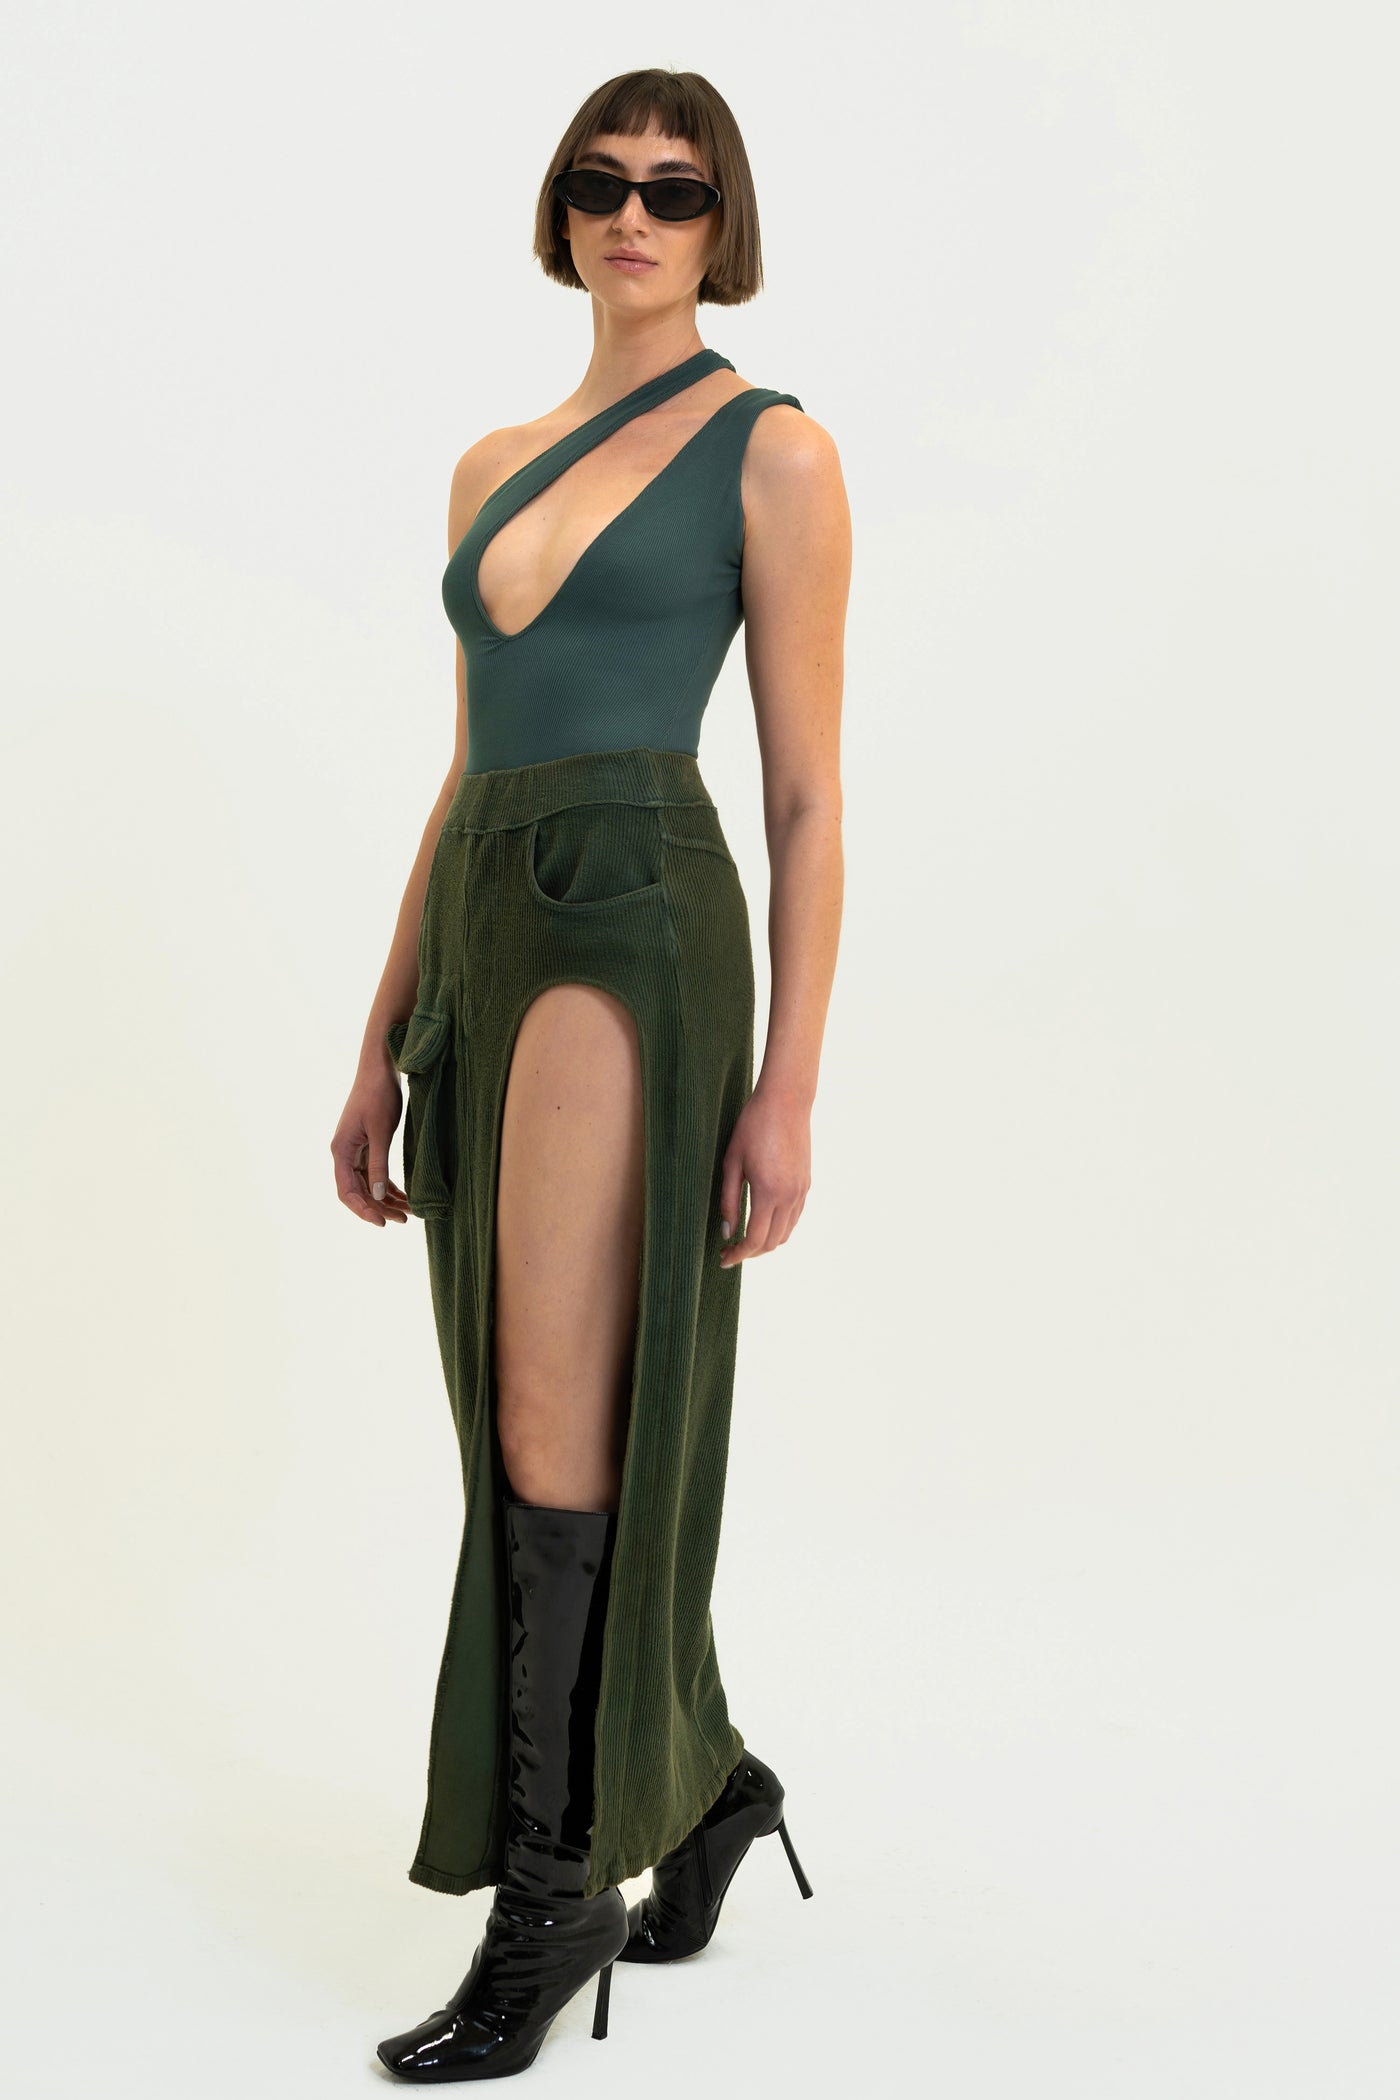 Model showcasing Olive Aspen Cargo Skirt. Made in the USA